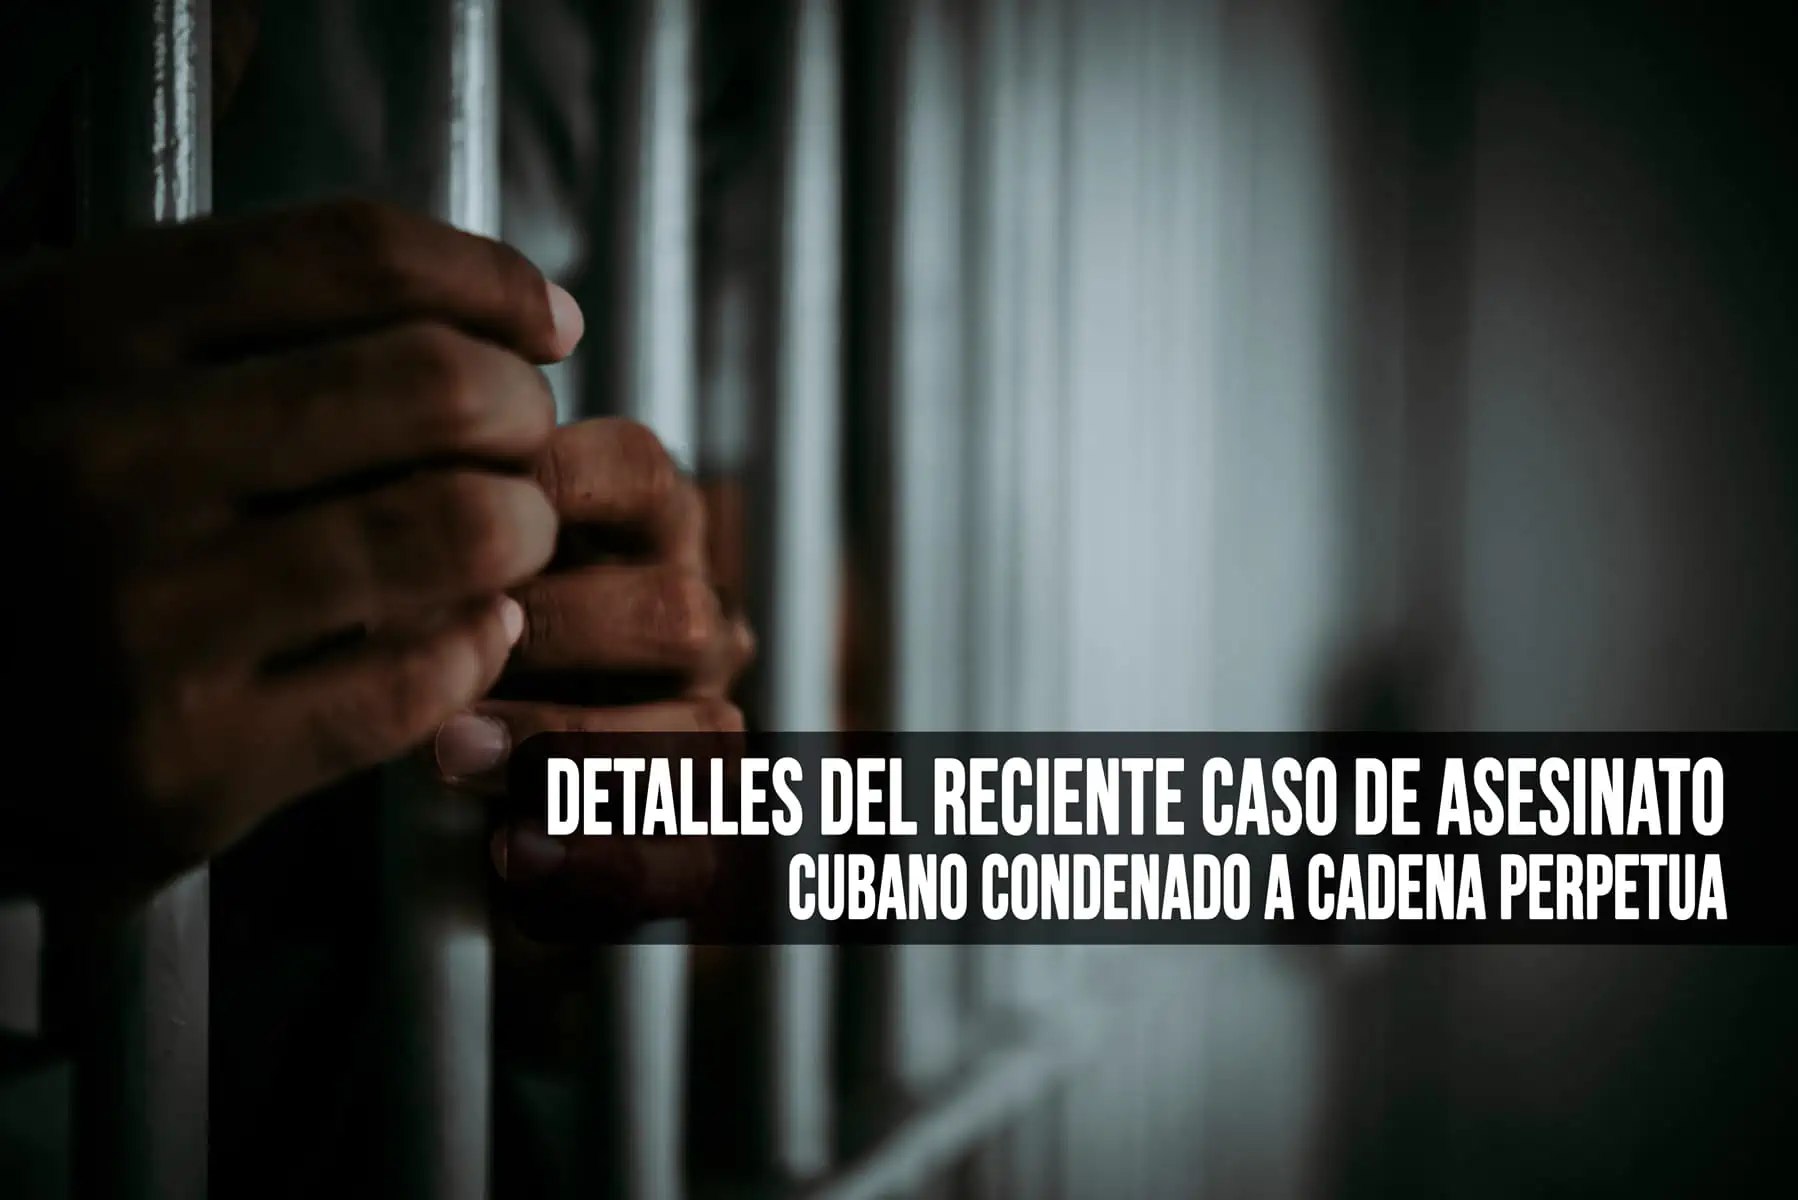 Condenan a Cadena Perpetua por Asesinato a un Cubano, ¿Qué Sucedió?